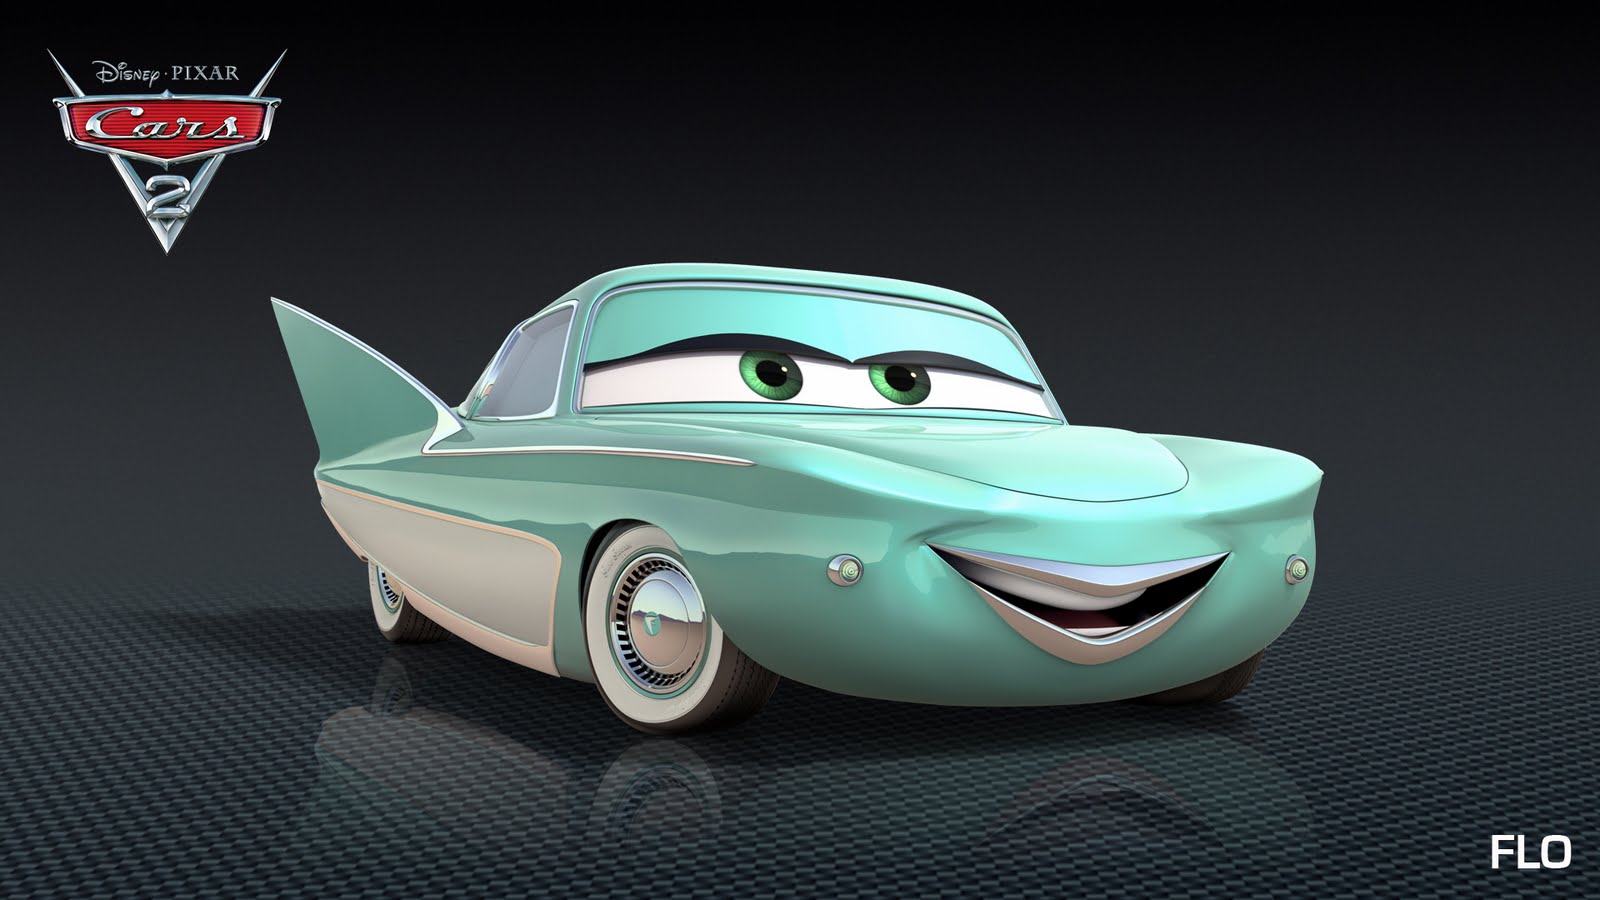 Cine Informacion y mas: Disney Pixar - Cars 2 - Descripción de